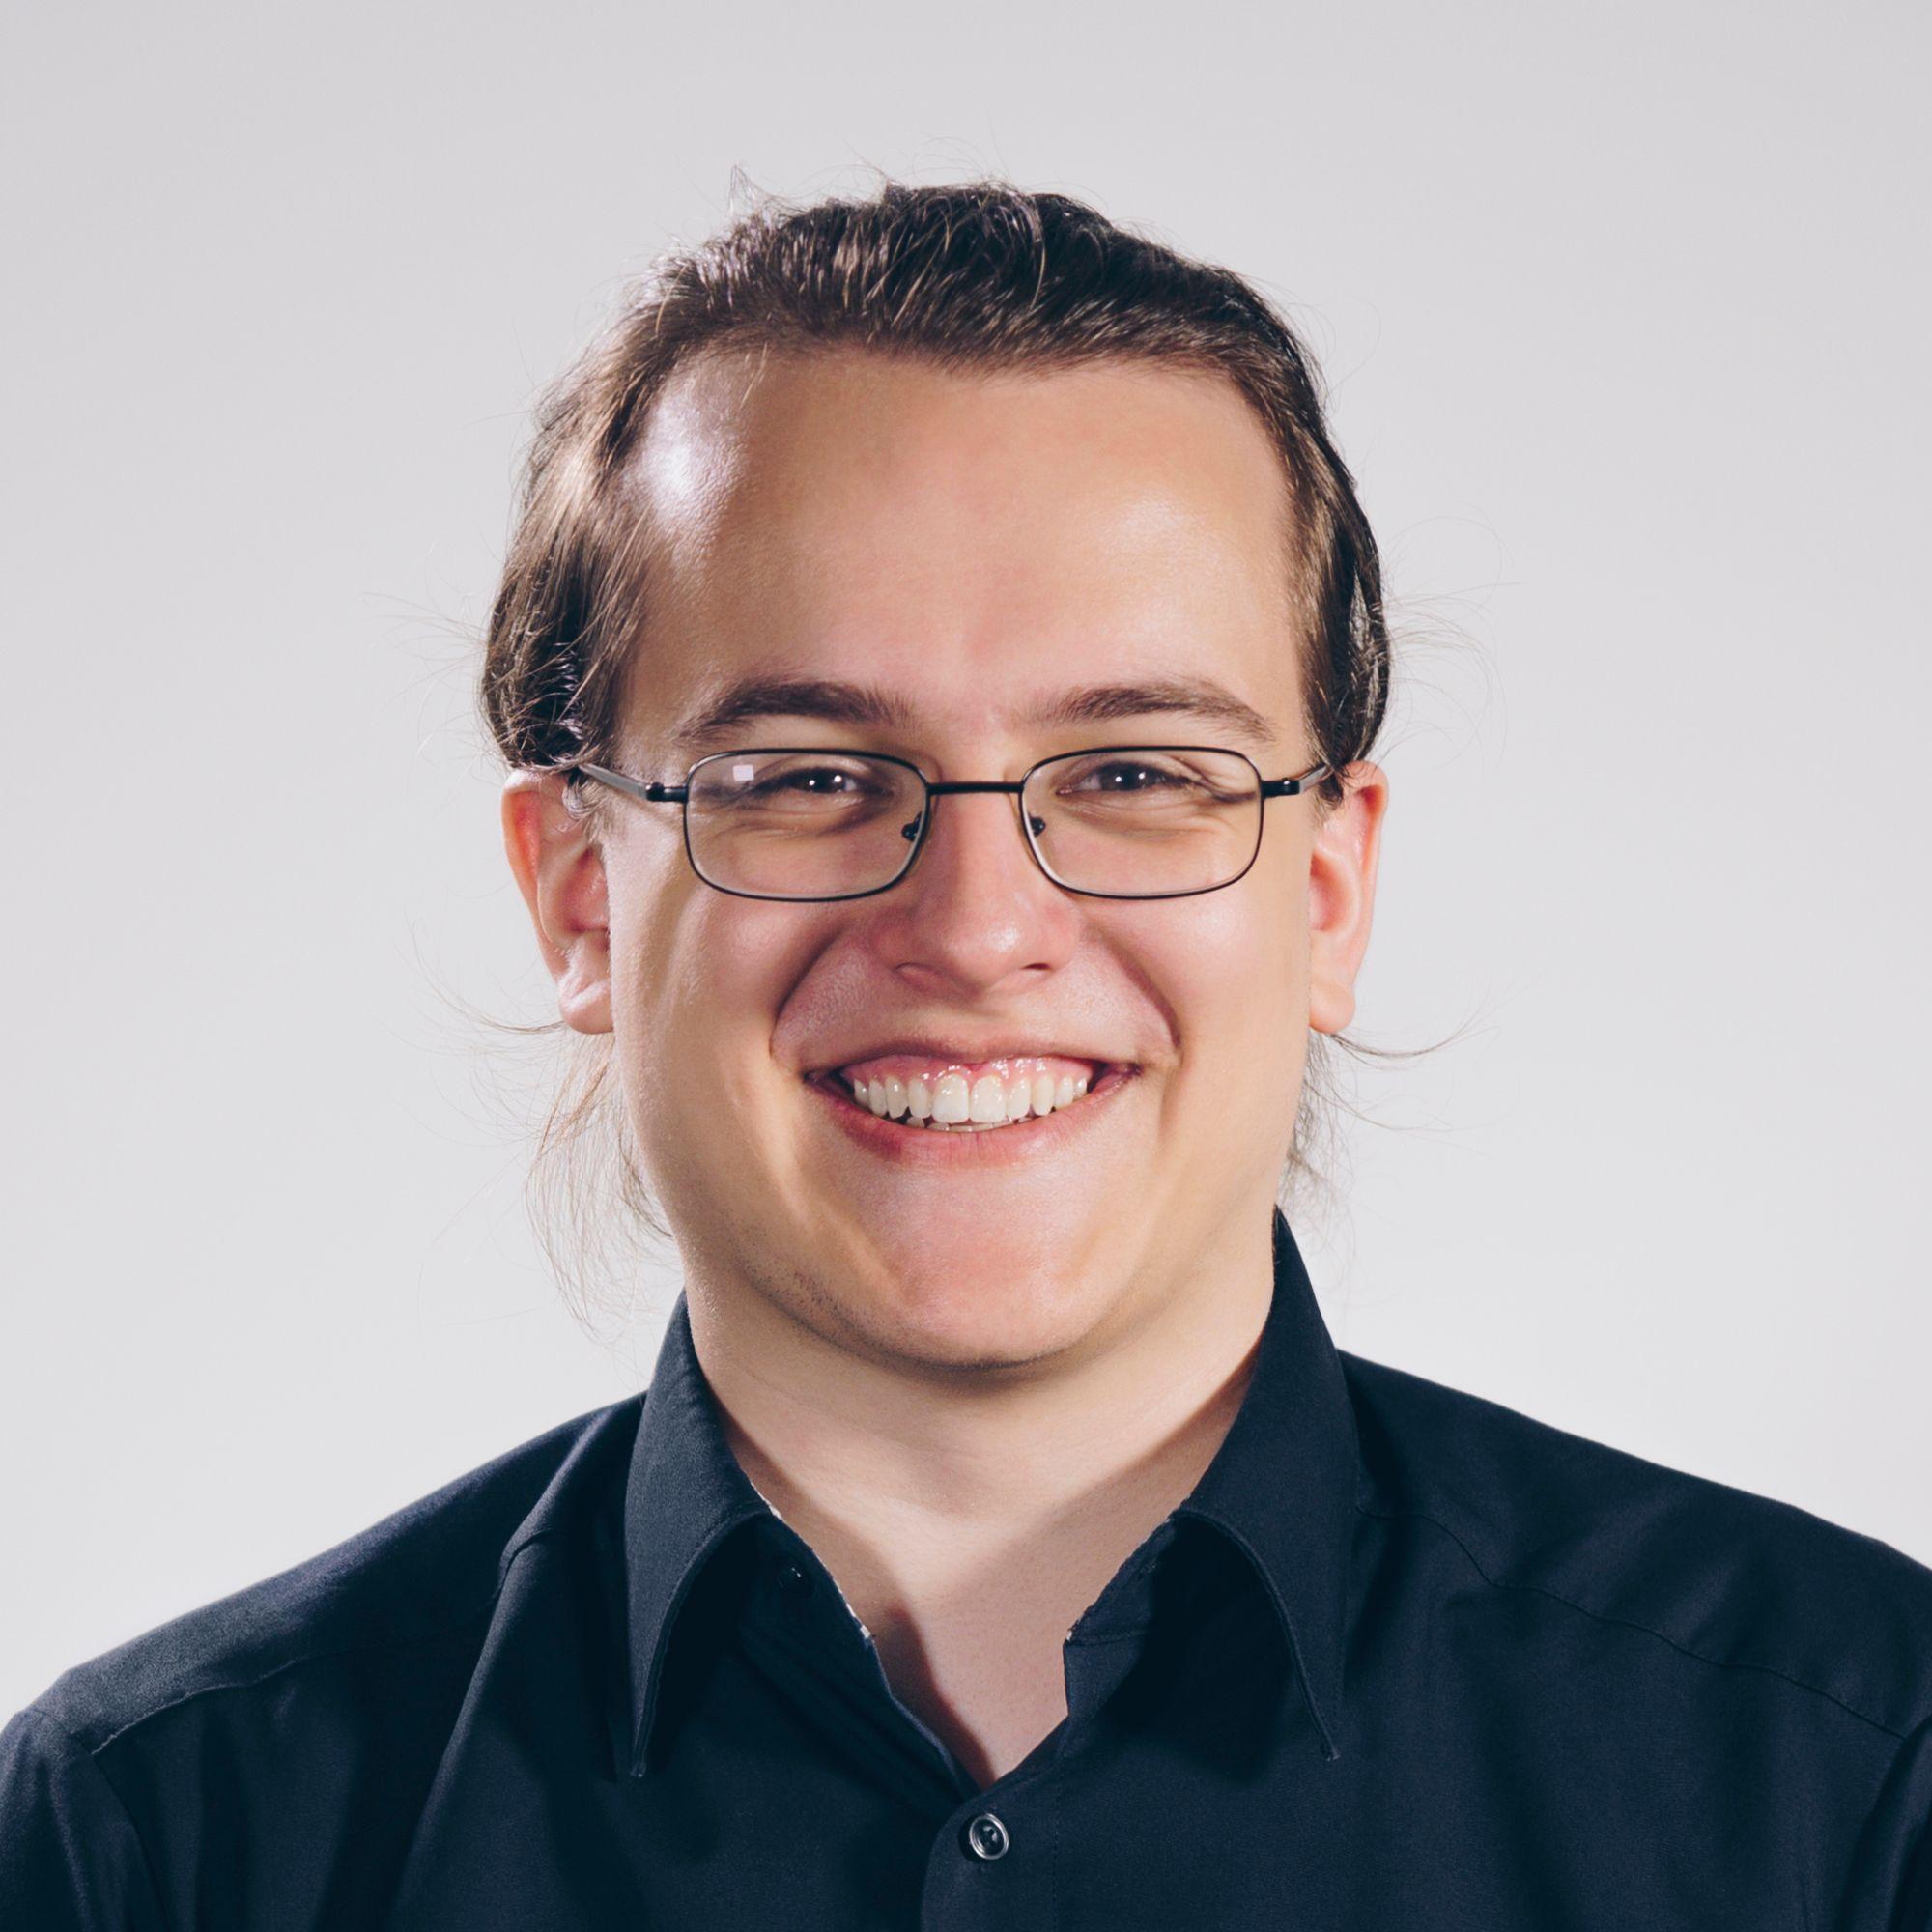 Profilbild von David Docampo, Backend Developer